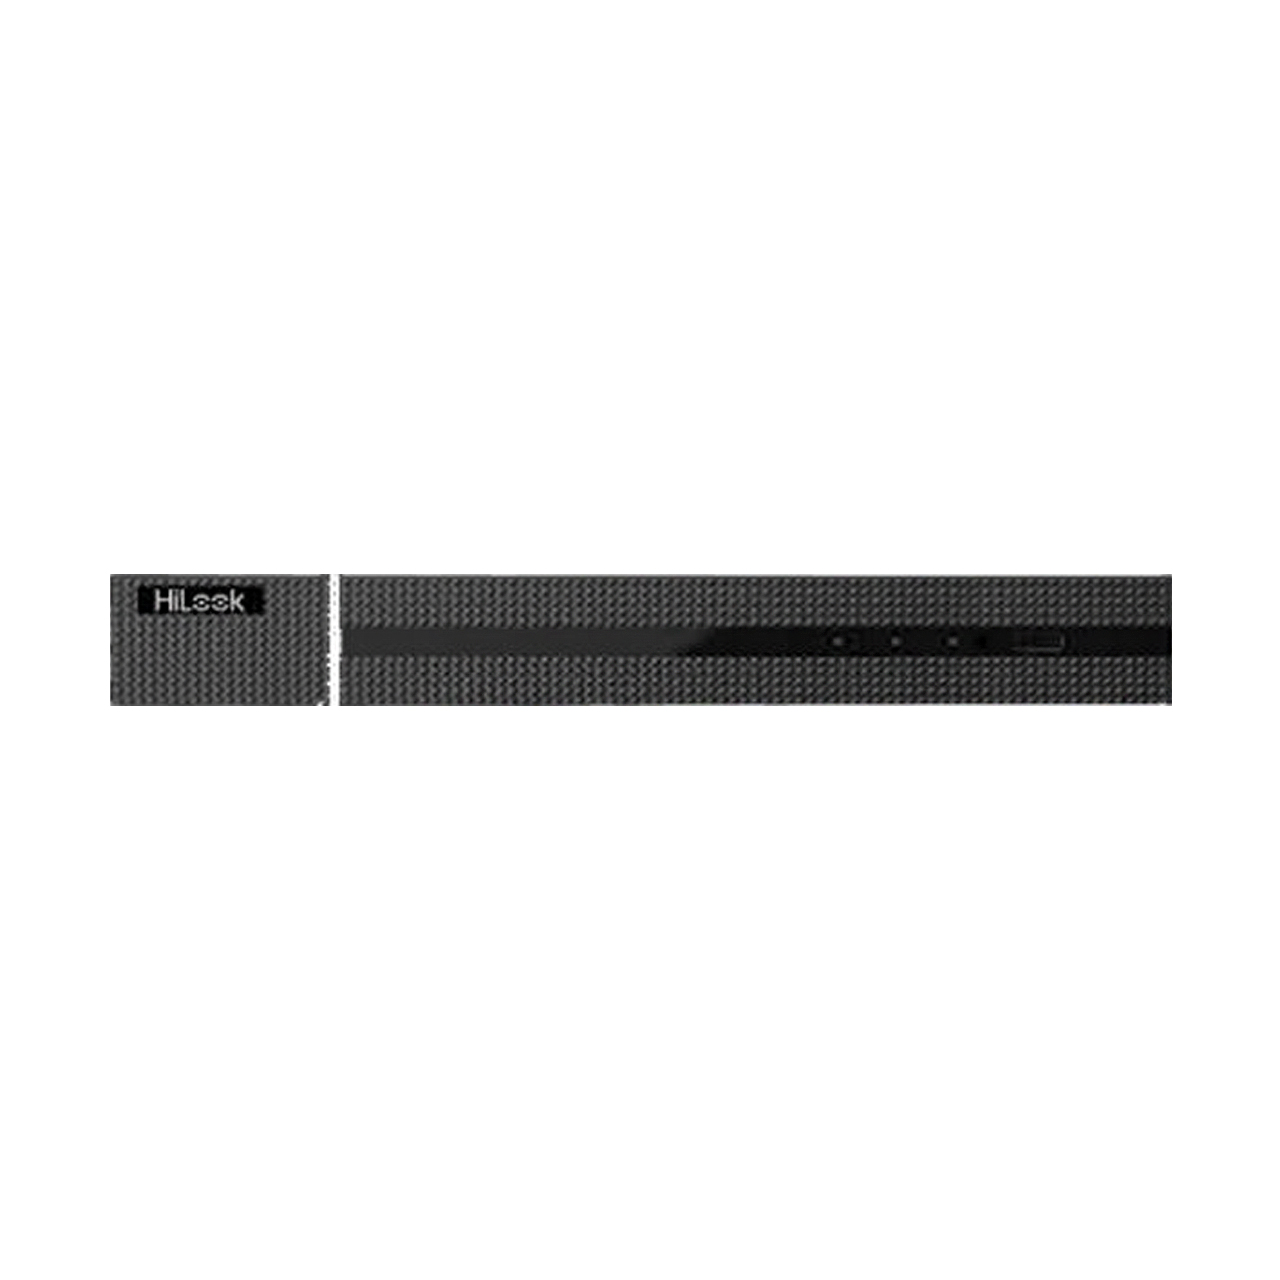 ضبط کننده دی وی ار 8 کانال مدل DVR-208Q-K1 برند HiLook